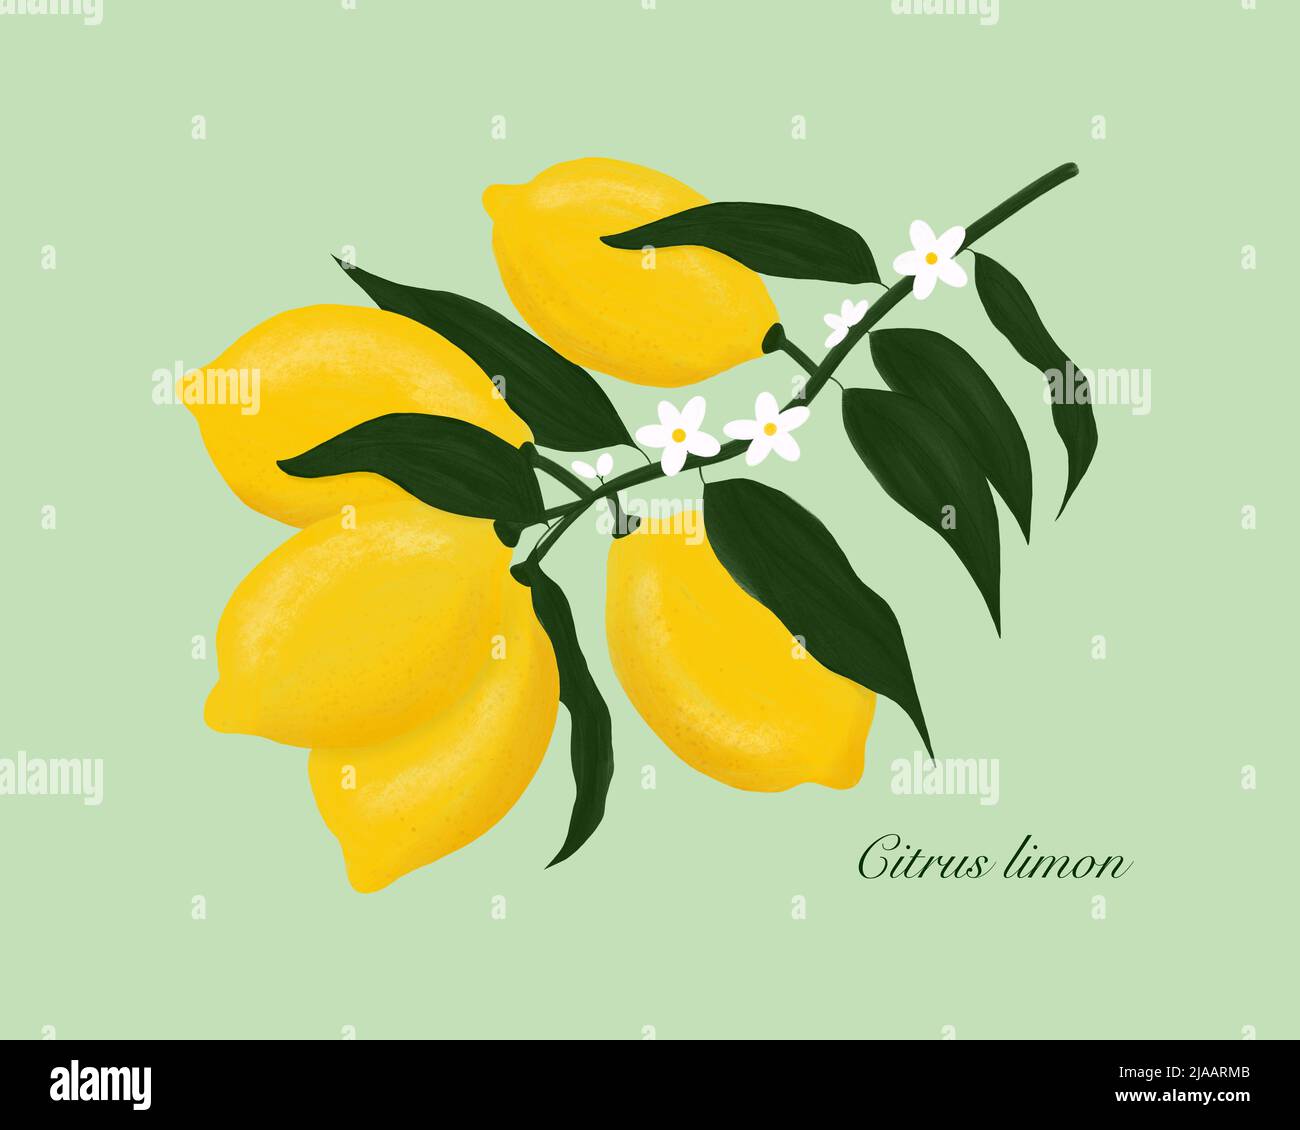 Limone. Limone di agrumi. Limoni gialli su ramo di limoni con fiori e foglie di verde scuro. Pittura disegnata a mano. Illustrazione gouache botanica. Foto Stock